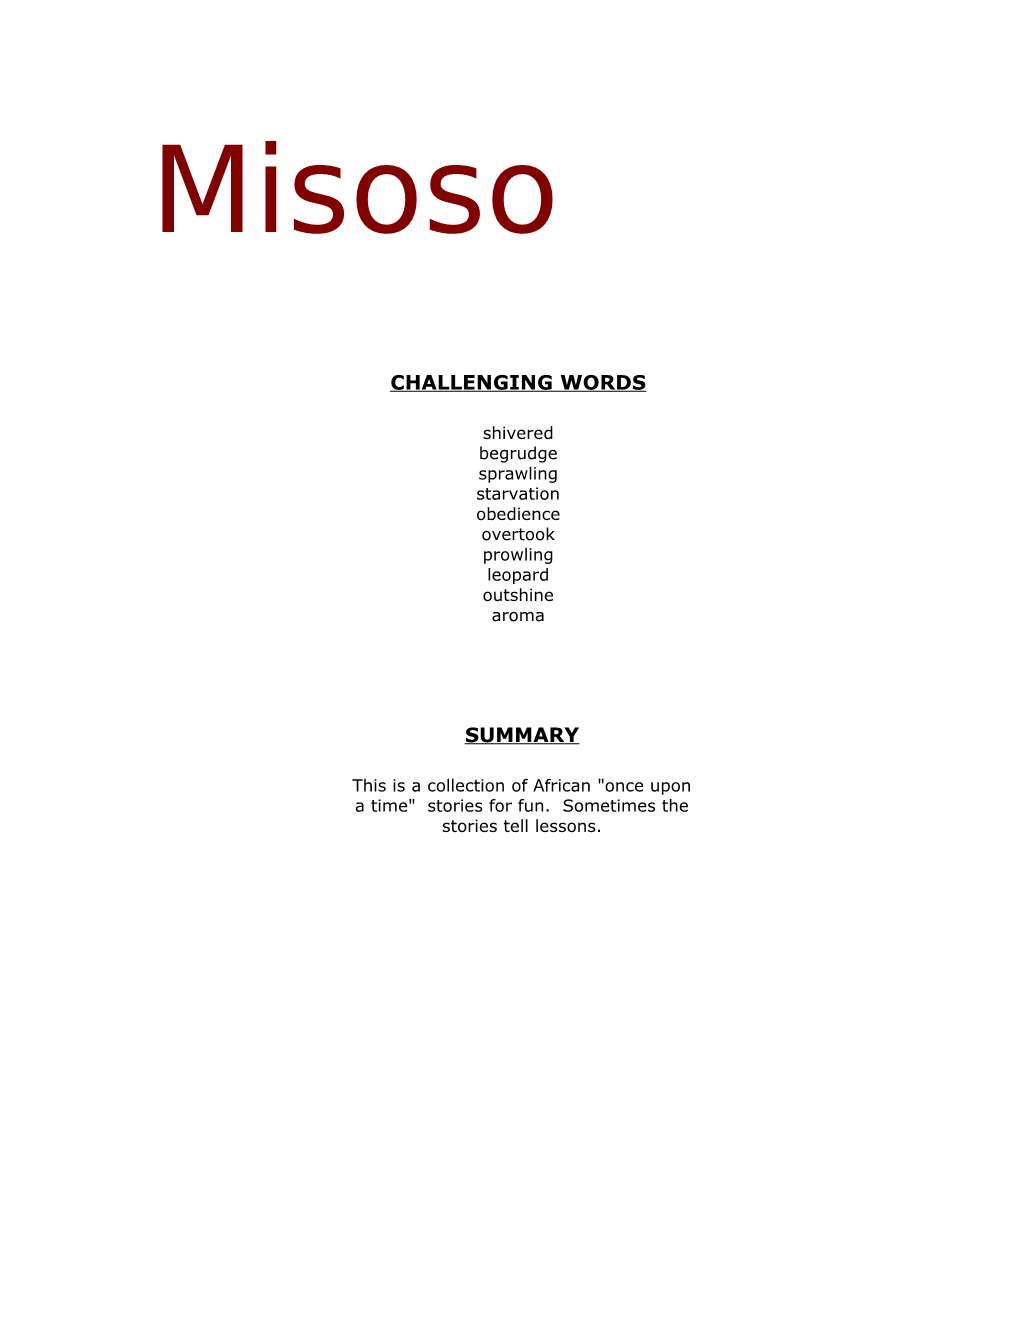 Book Title: Misoso, Kindai and the Ape